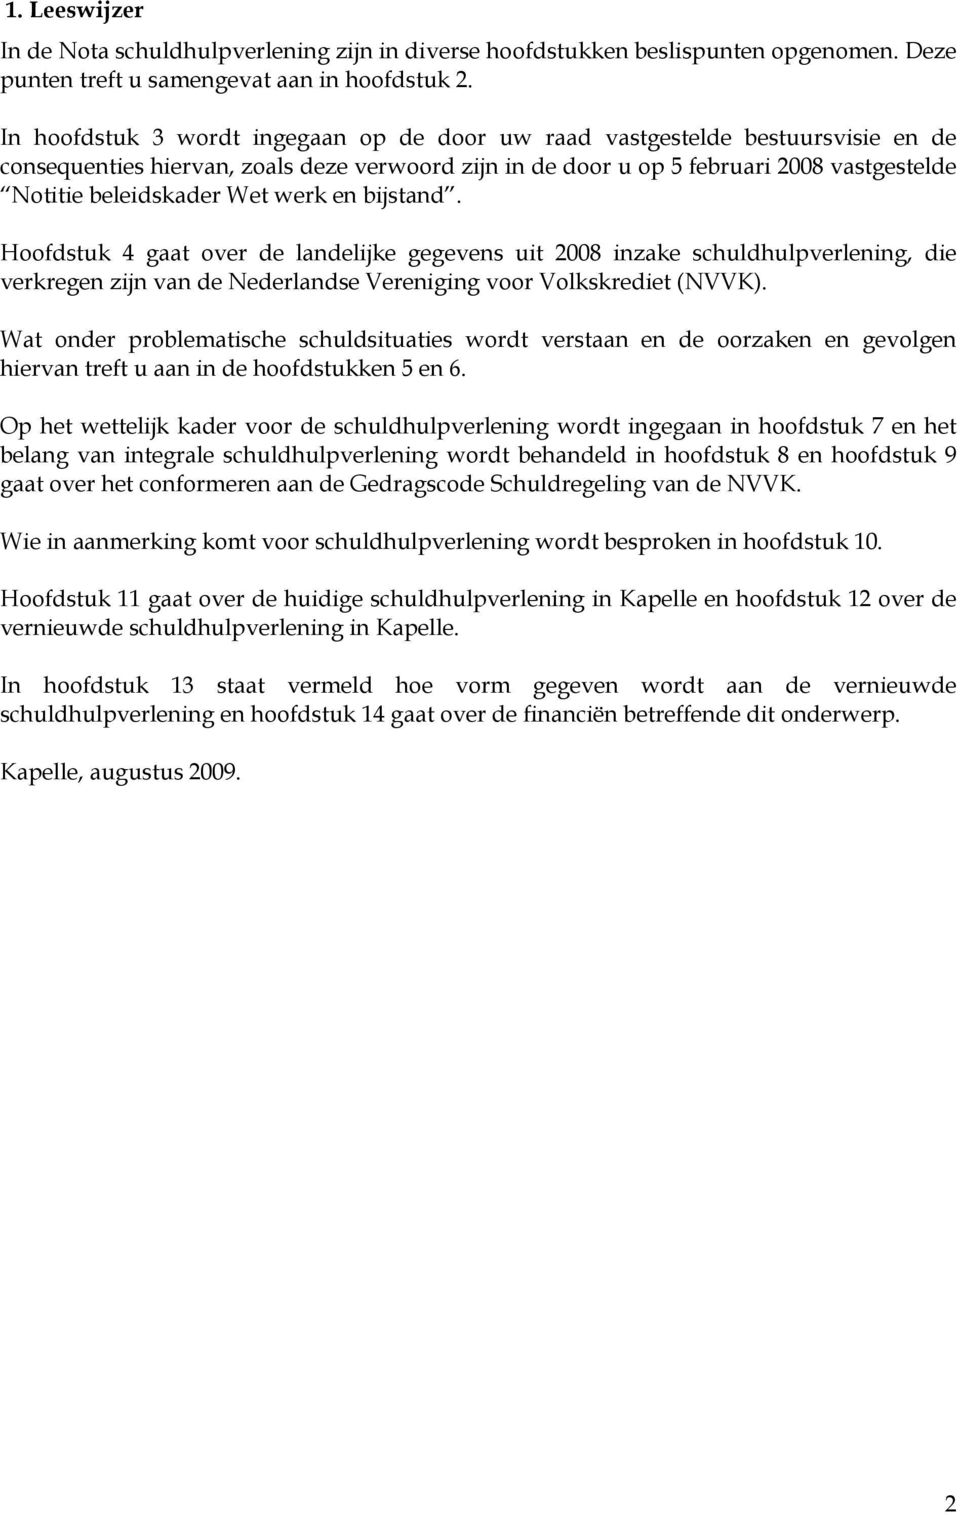 werk en bijstand. Hoofdstuk 4 gaat over de landelijke gegevens uit 2008 inzake schuldhulpverlening, die verkregen zijn van de Nederlandse Vereniging voor Volkskrediet (NVVK).